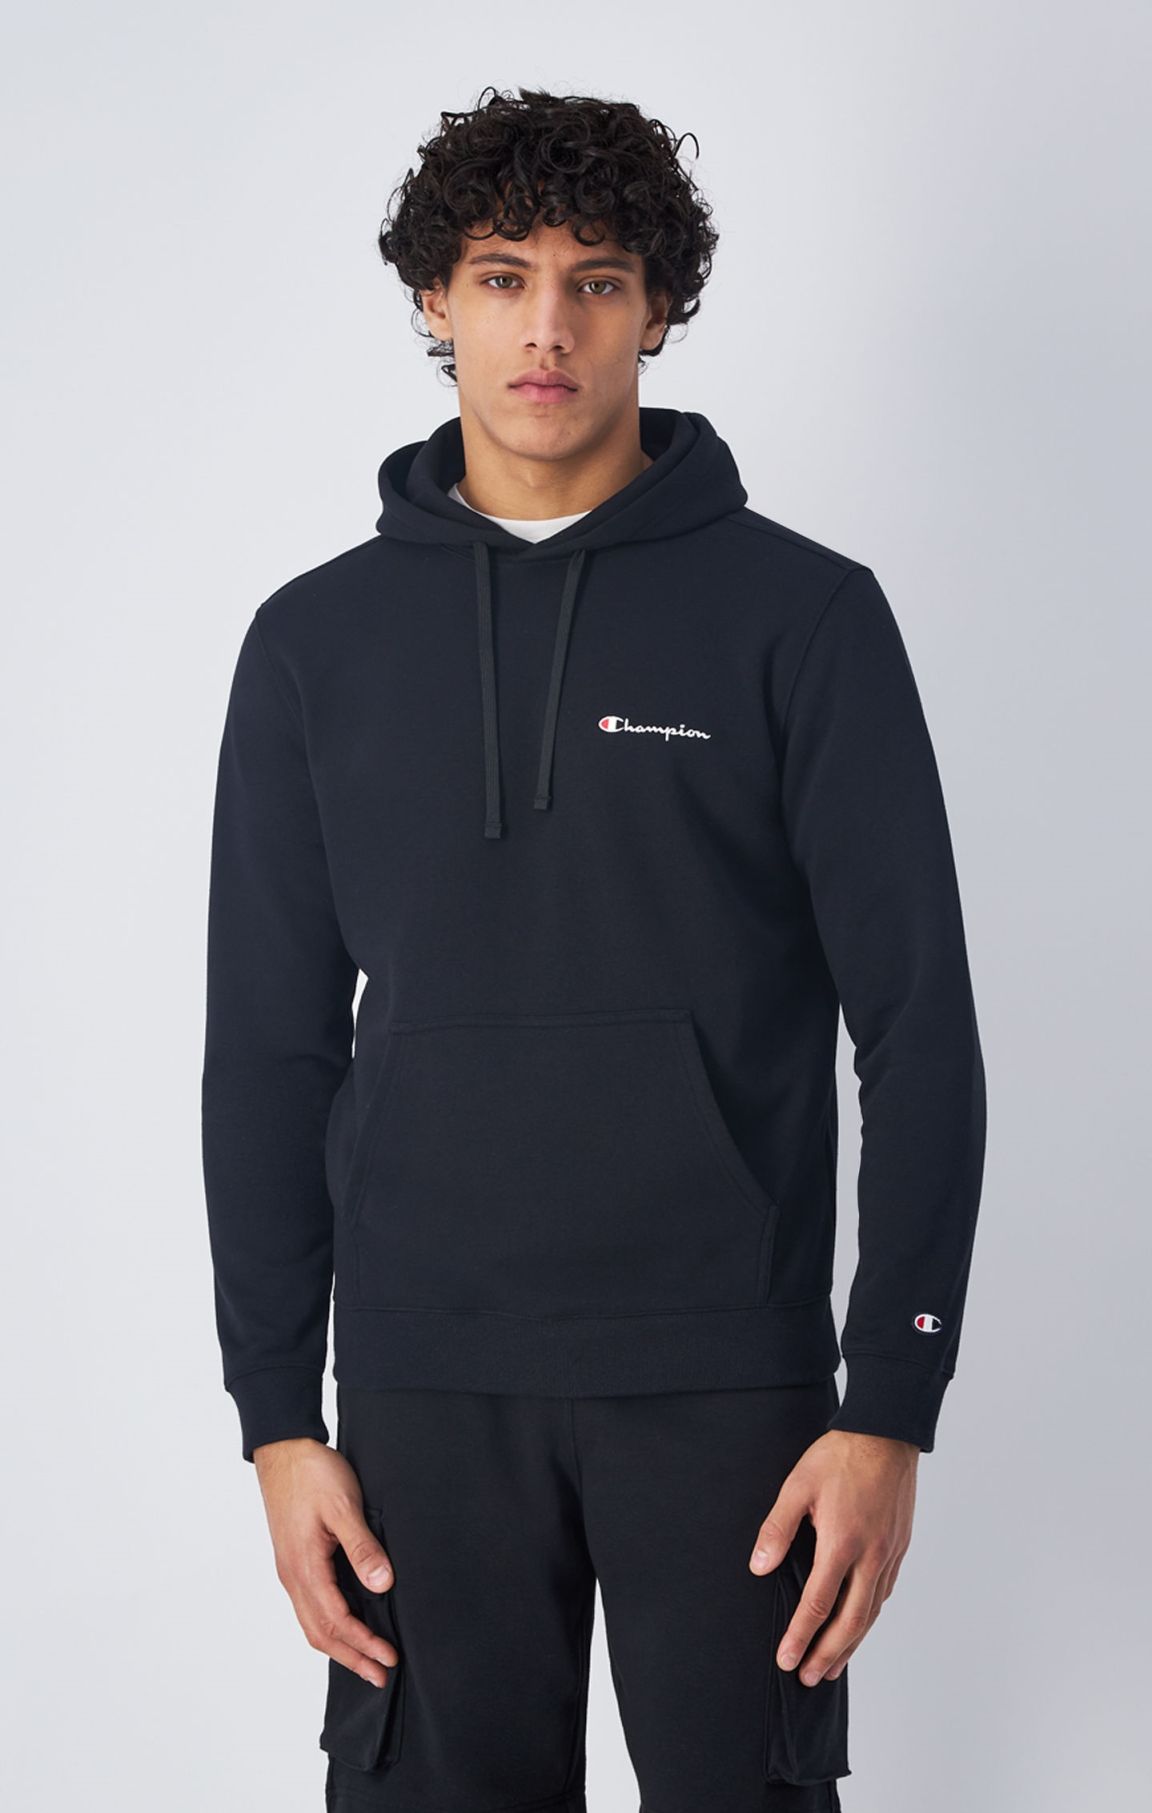 Sweatshirt à capuche et petit logo Champion brodé